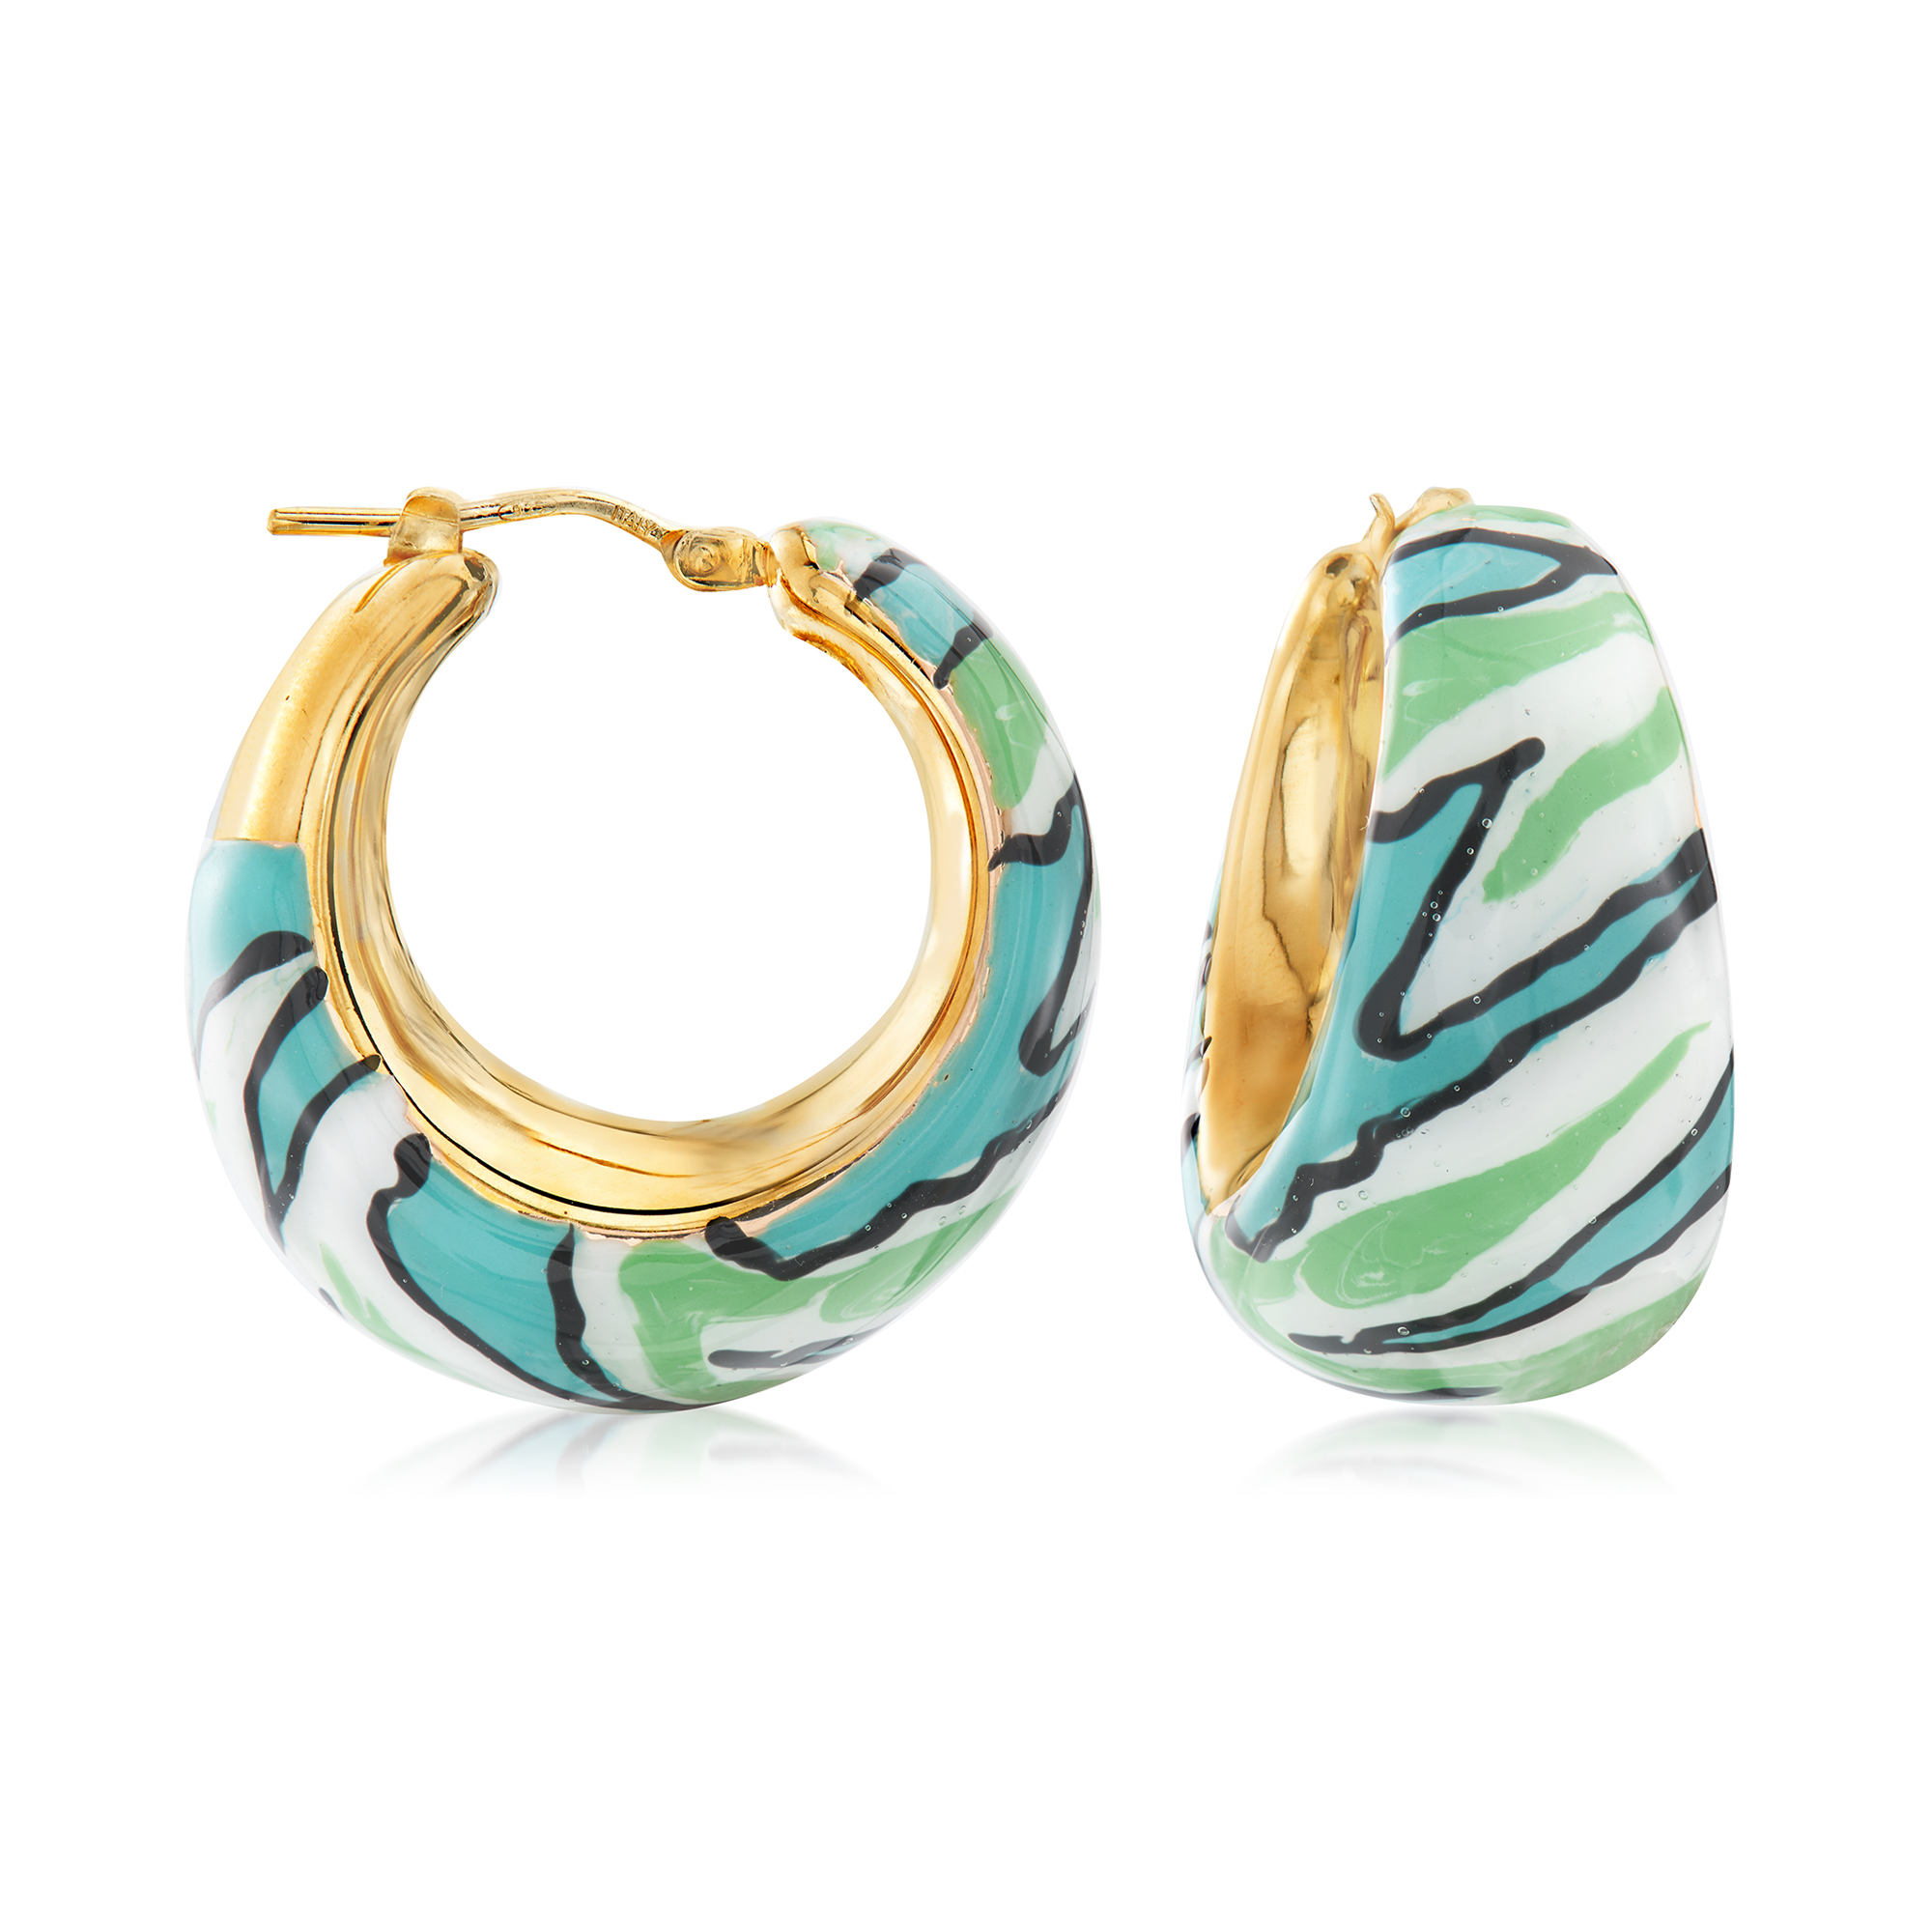 Italian Multicolored Enamel Hoop Earrings in 18kt Gold Over 